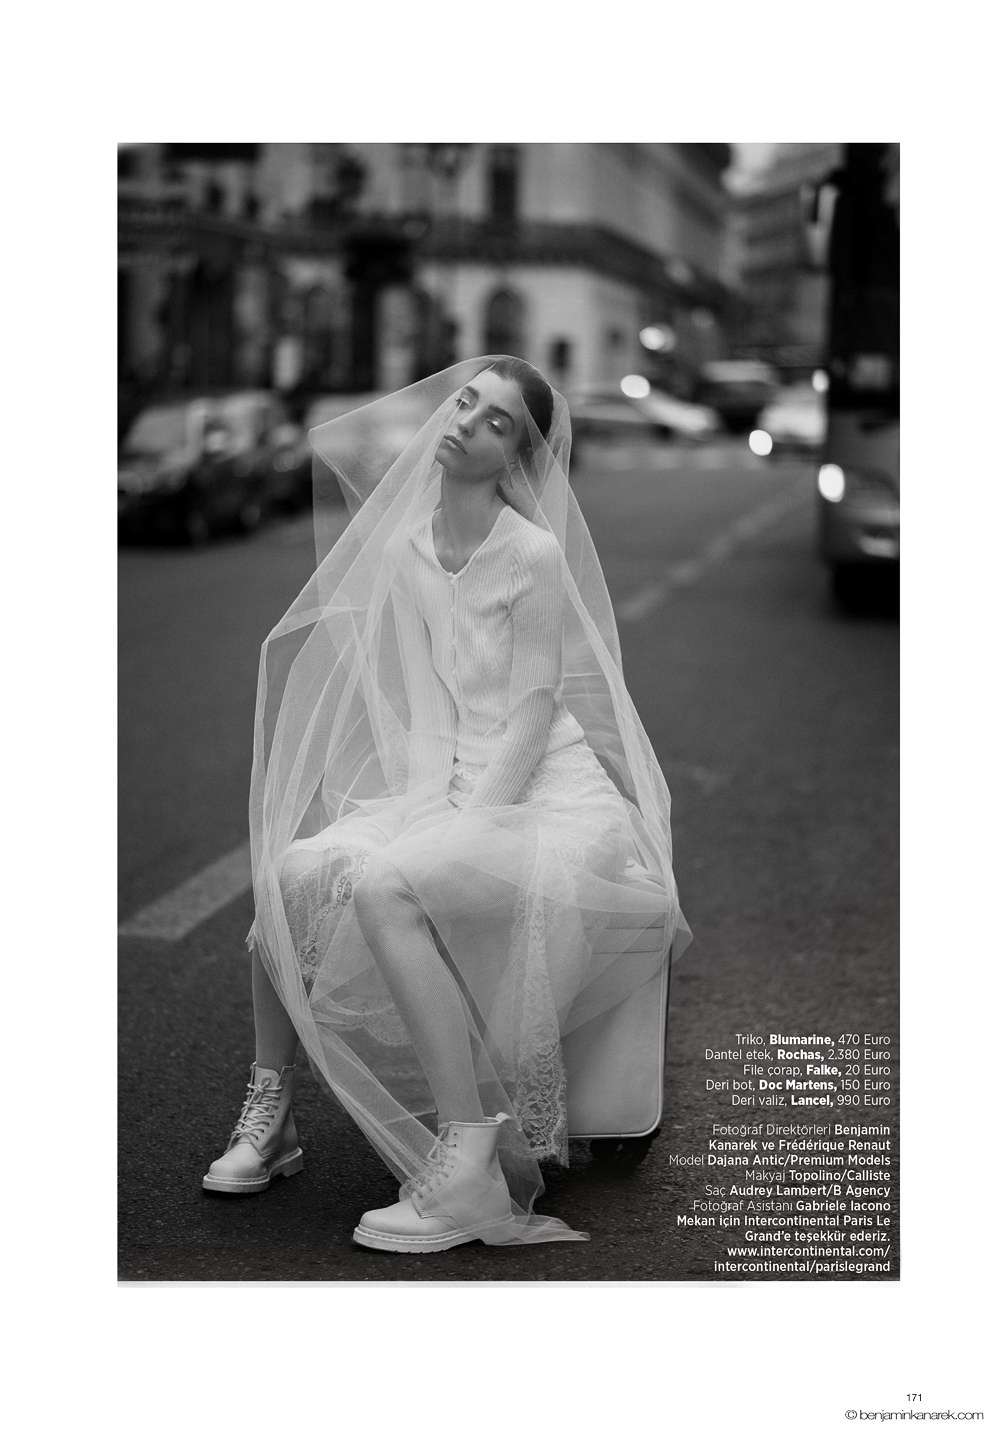 婚紗照就這樣拍吧！土耳其版《Harper’s Bazaar》位我們展示街頭時髦婚紗照 9